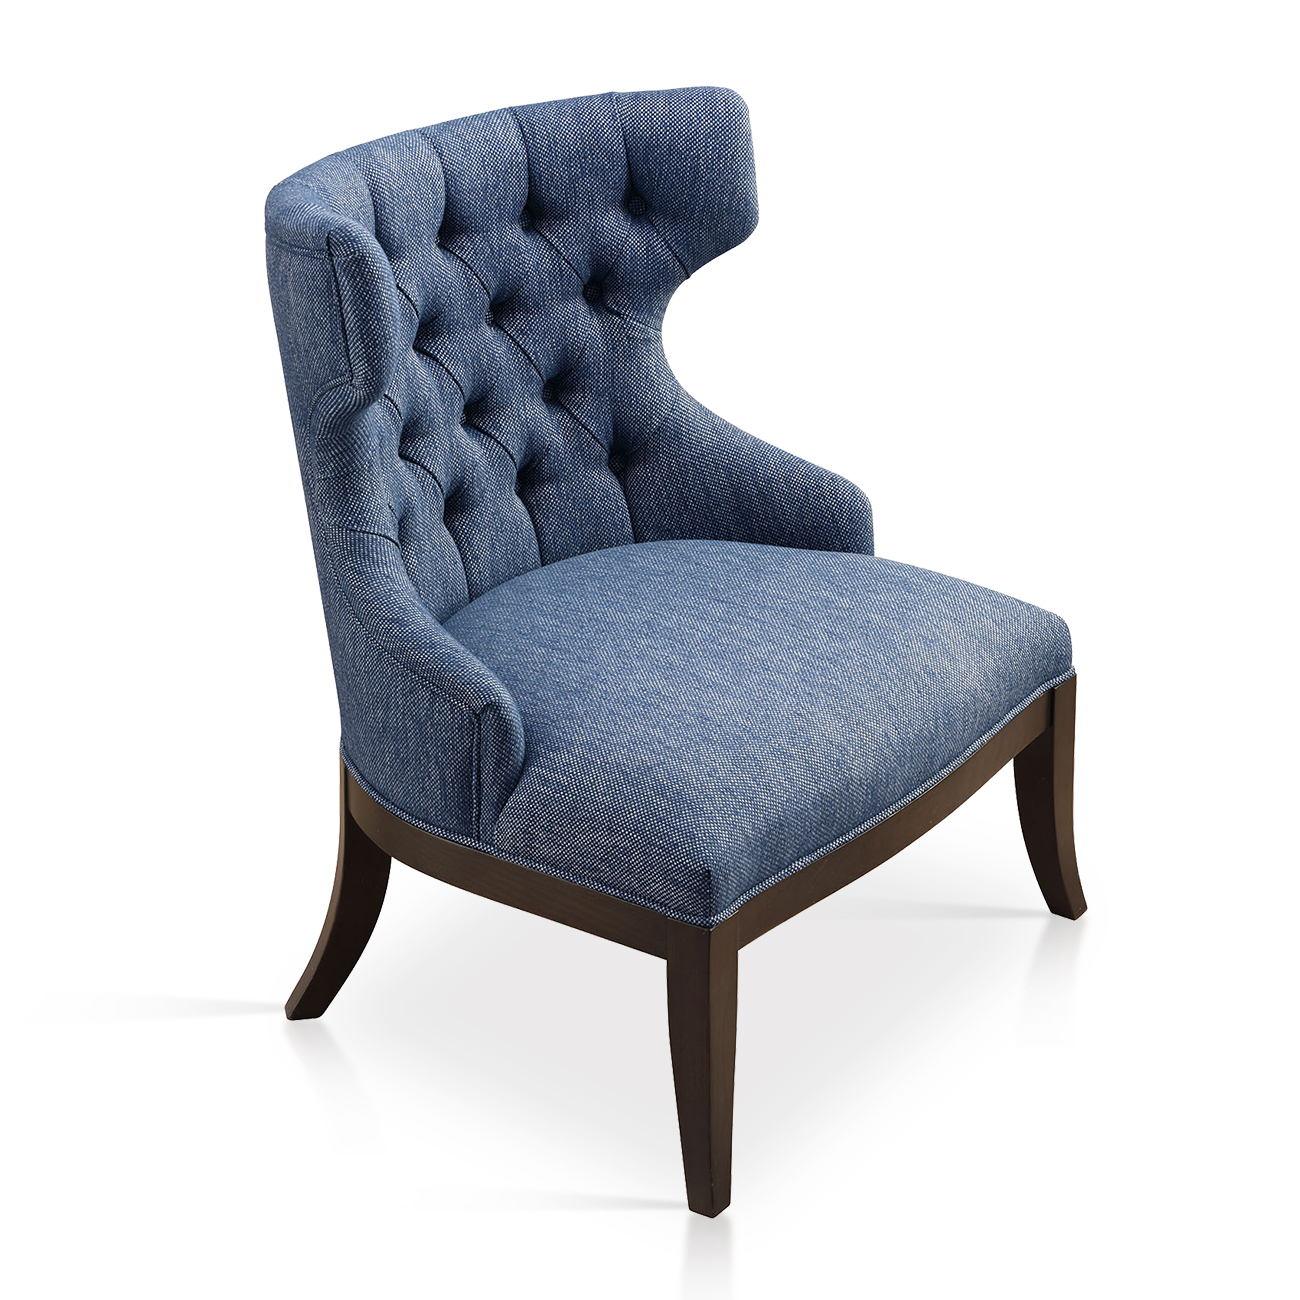  椅子 休闲棉丨高密度回弹棉